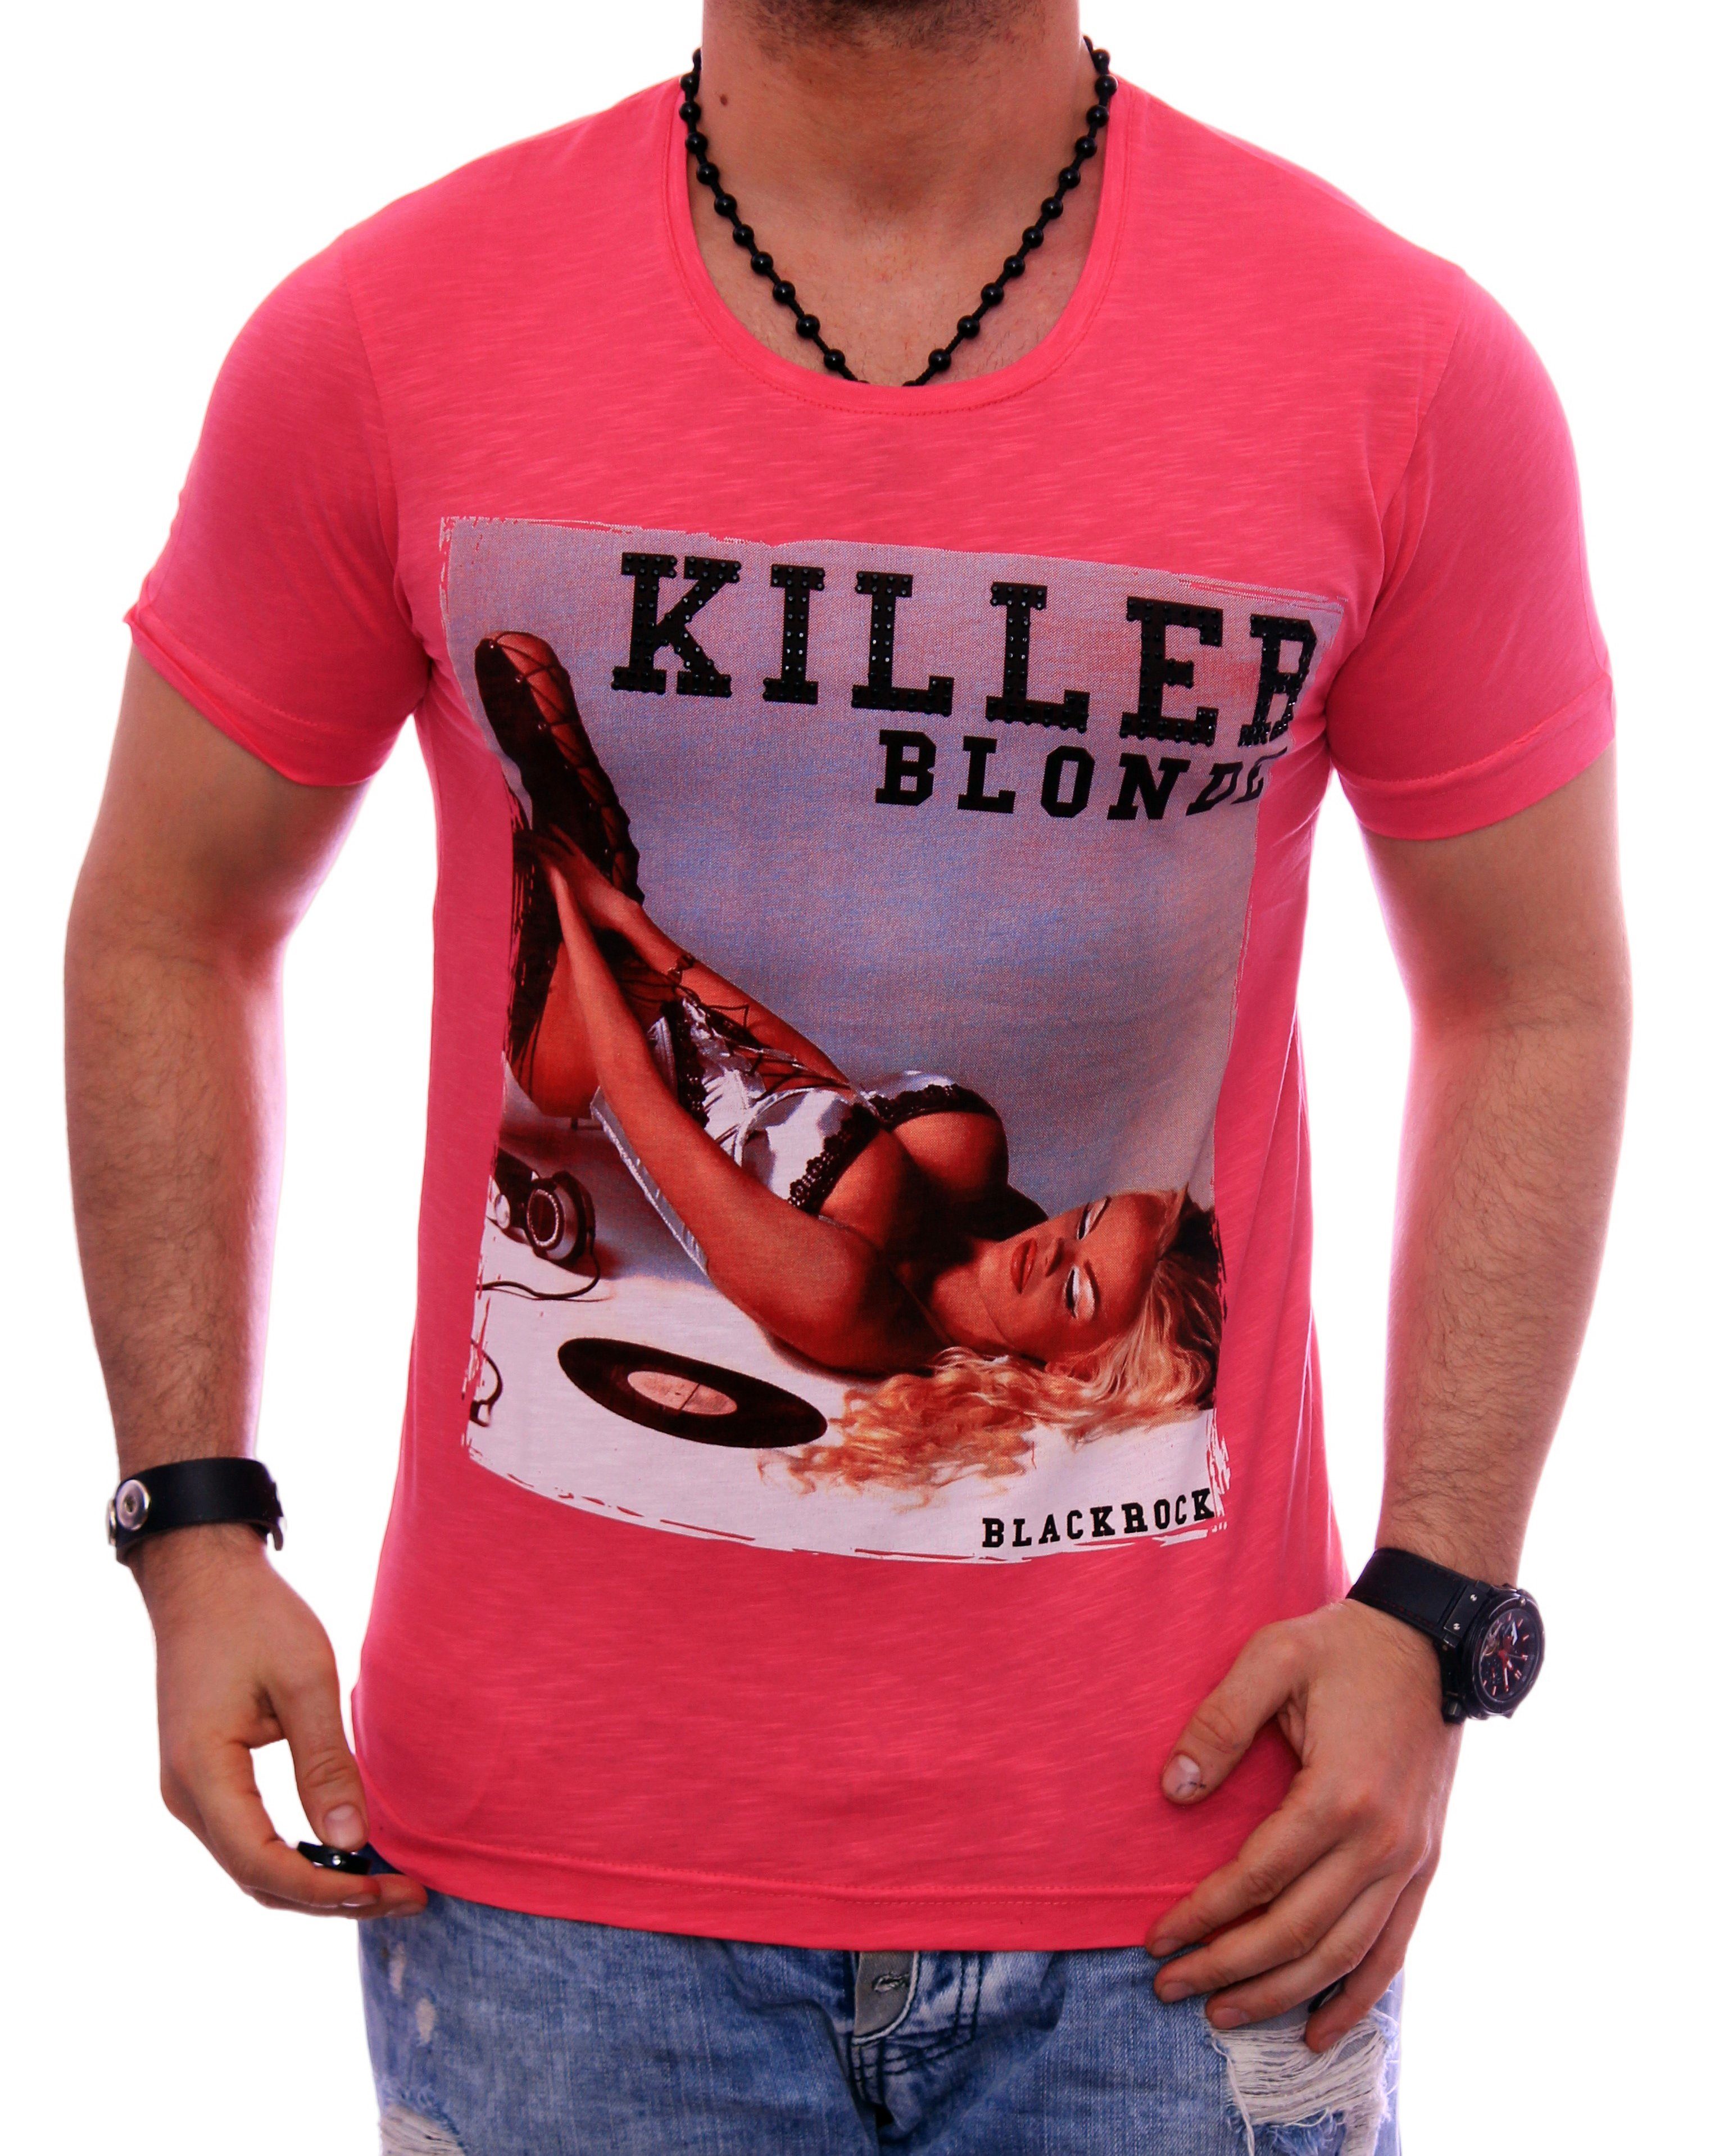 BLACKROCK T-Shirt Rundhals Shirt Motiv kurzarm Strasssteine Slim-Fit T-Shirt Herren Pink bedruckt Urlaub Print